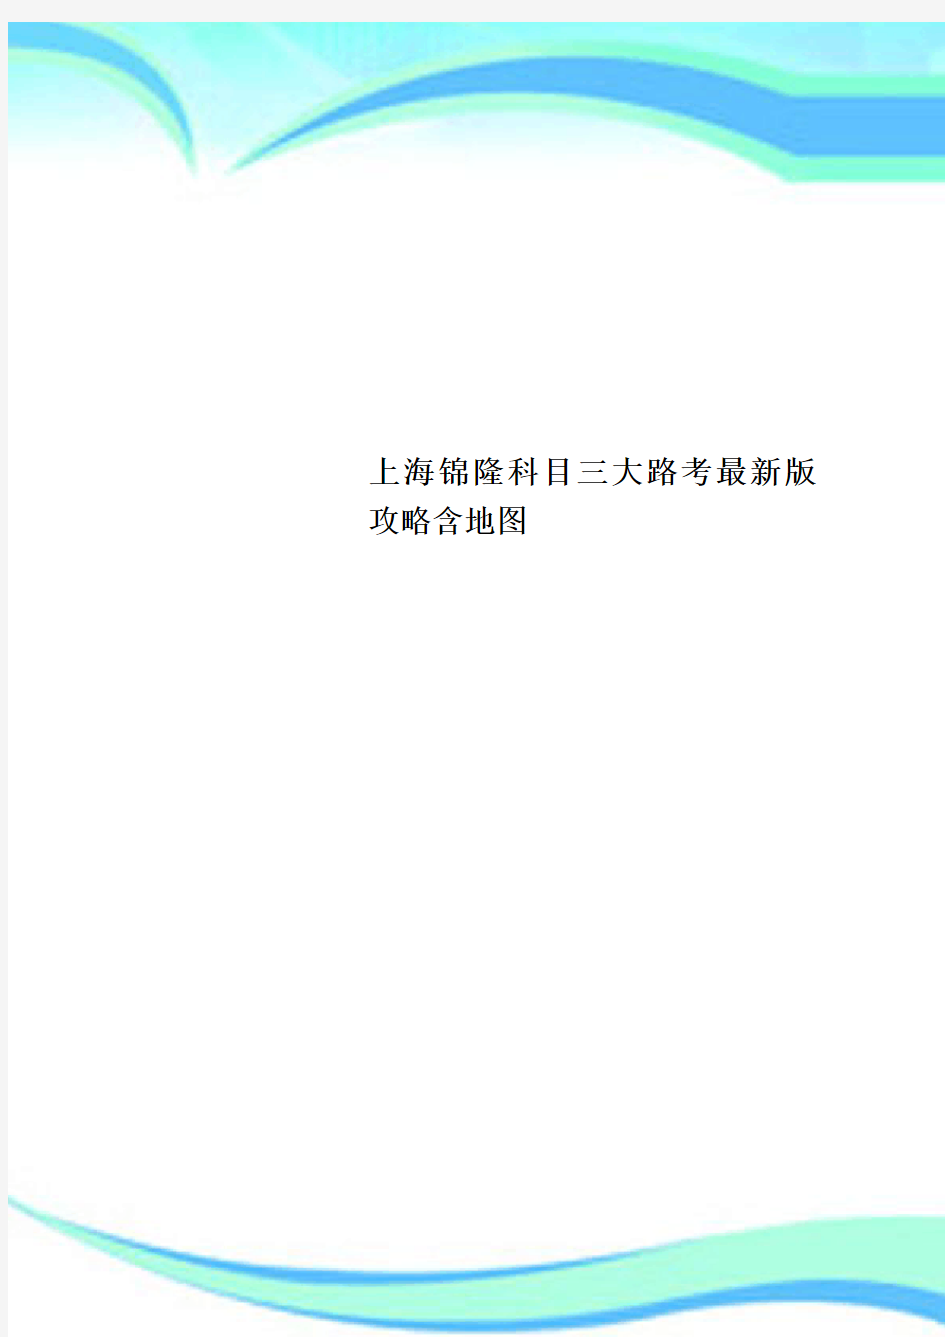 上海锦隆科目三大路考最新版攻略含地图